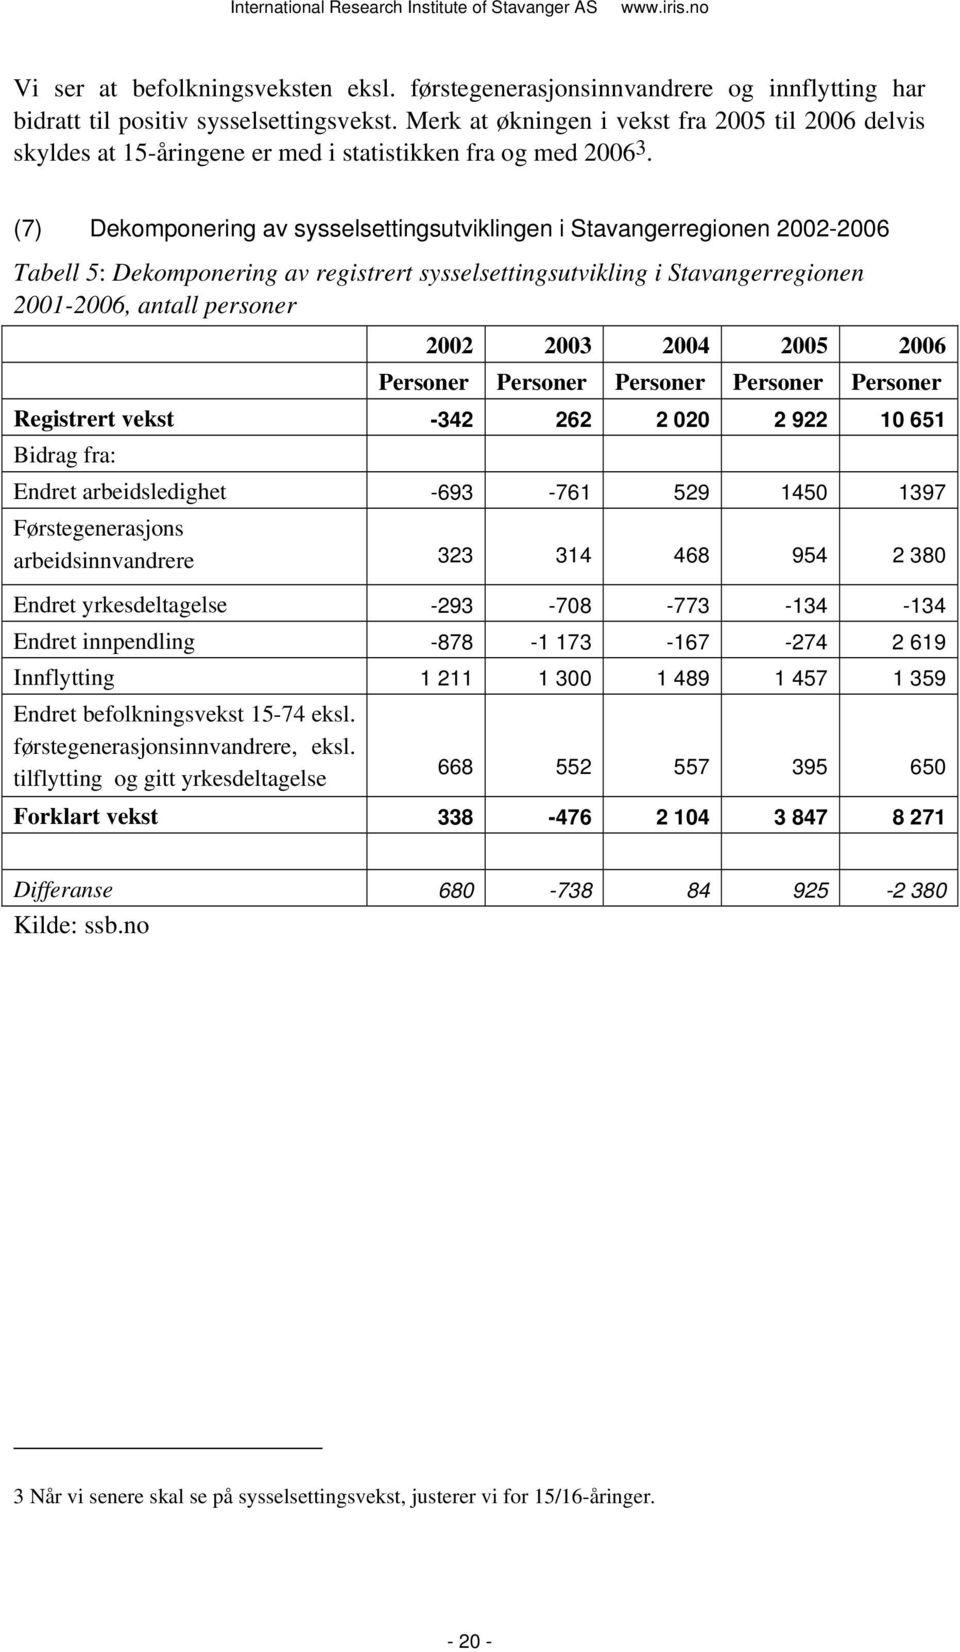 (7) Dekomponering av sysselsettingsutviklingen i Stavangerregionen 2002-2006 Tabell 5: Dekomponering av registrert sysselsettingsutvikling i Stavangerregionen 2001-2006, antall personer 2002 2003